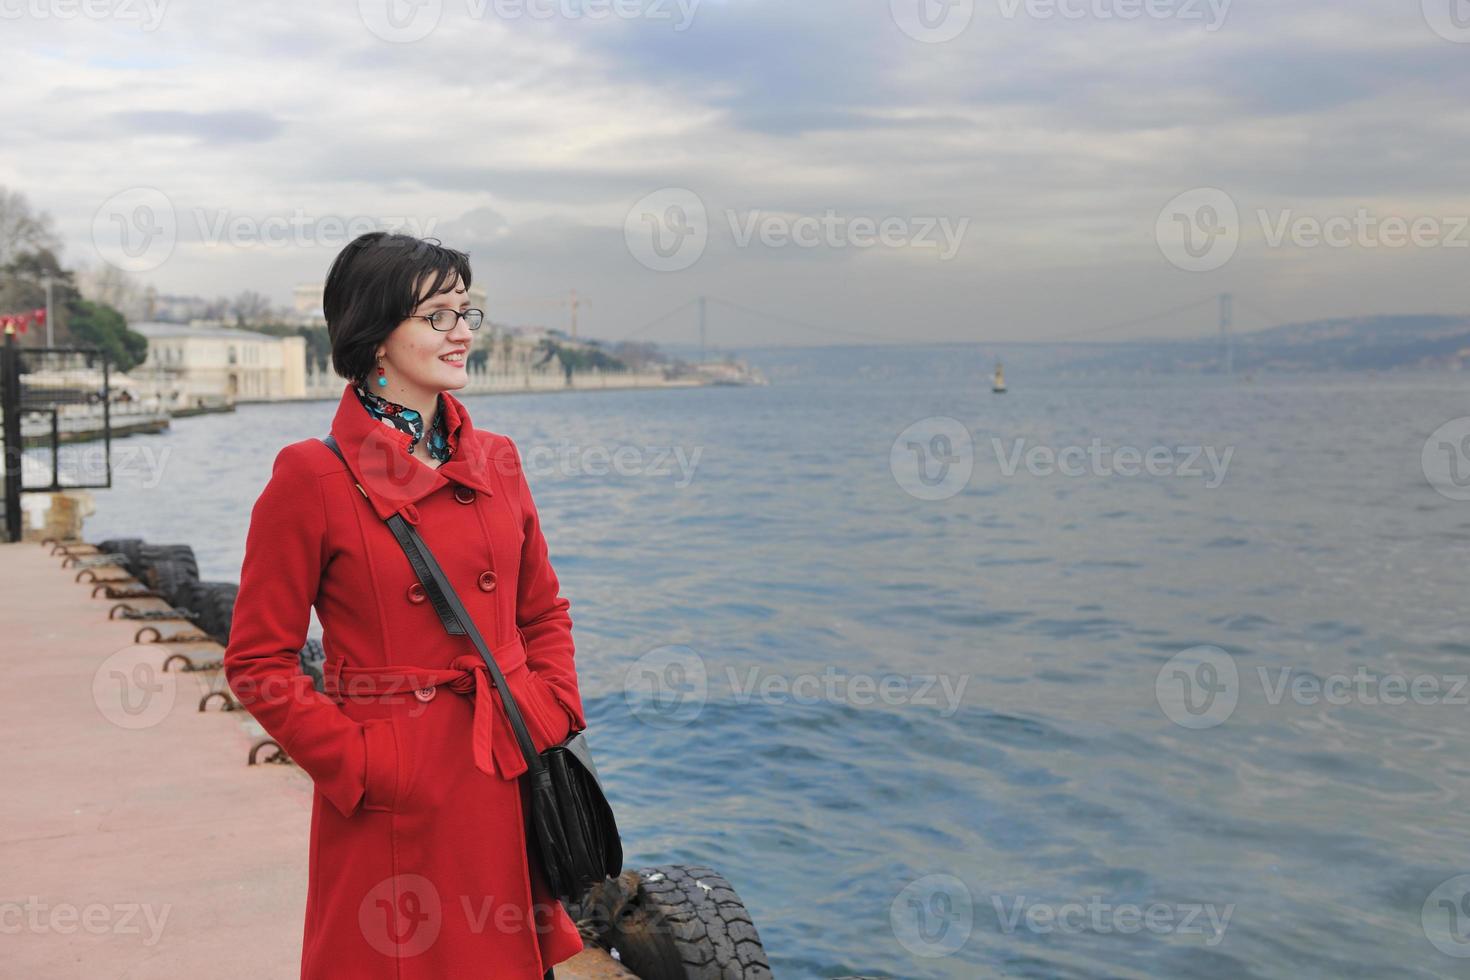 femme visite l'ancienne istanbul en turquie photo